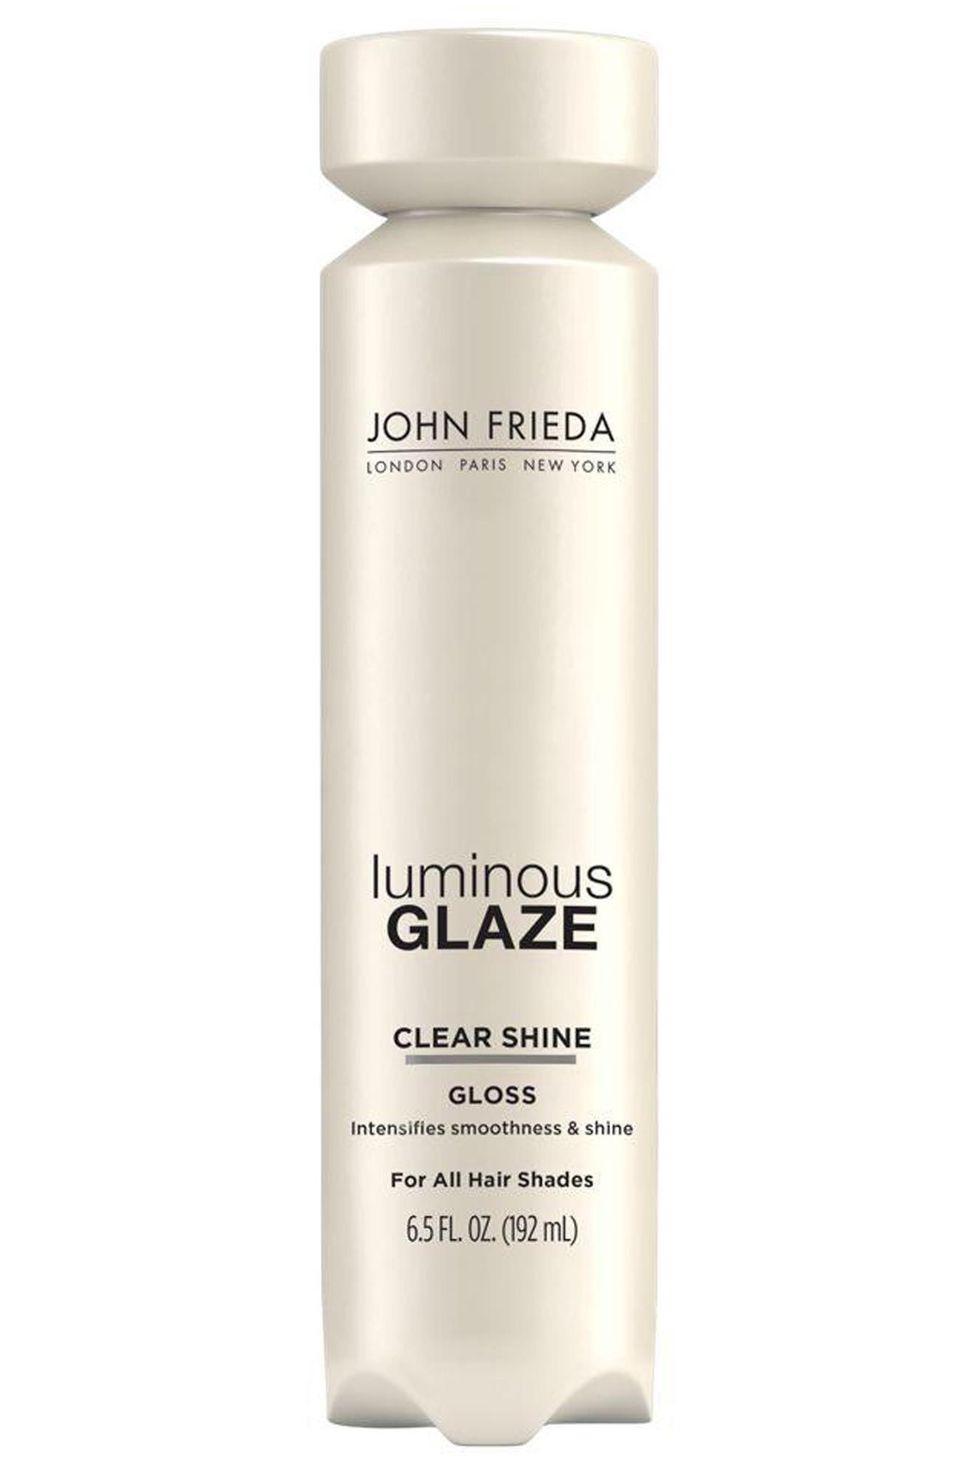 John Frieda Shine Spray, 3-in-1, Vibrant - 5.0 oz